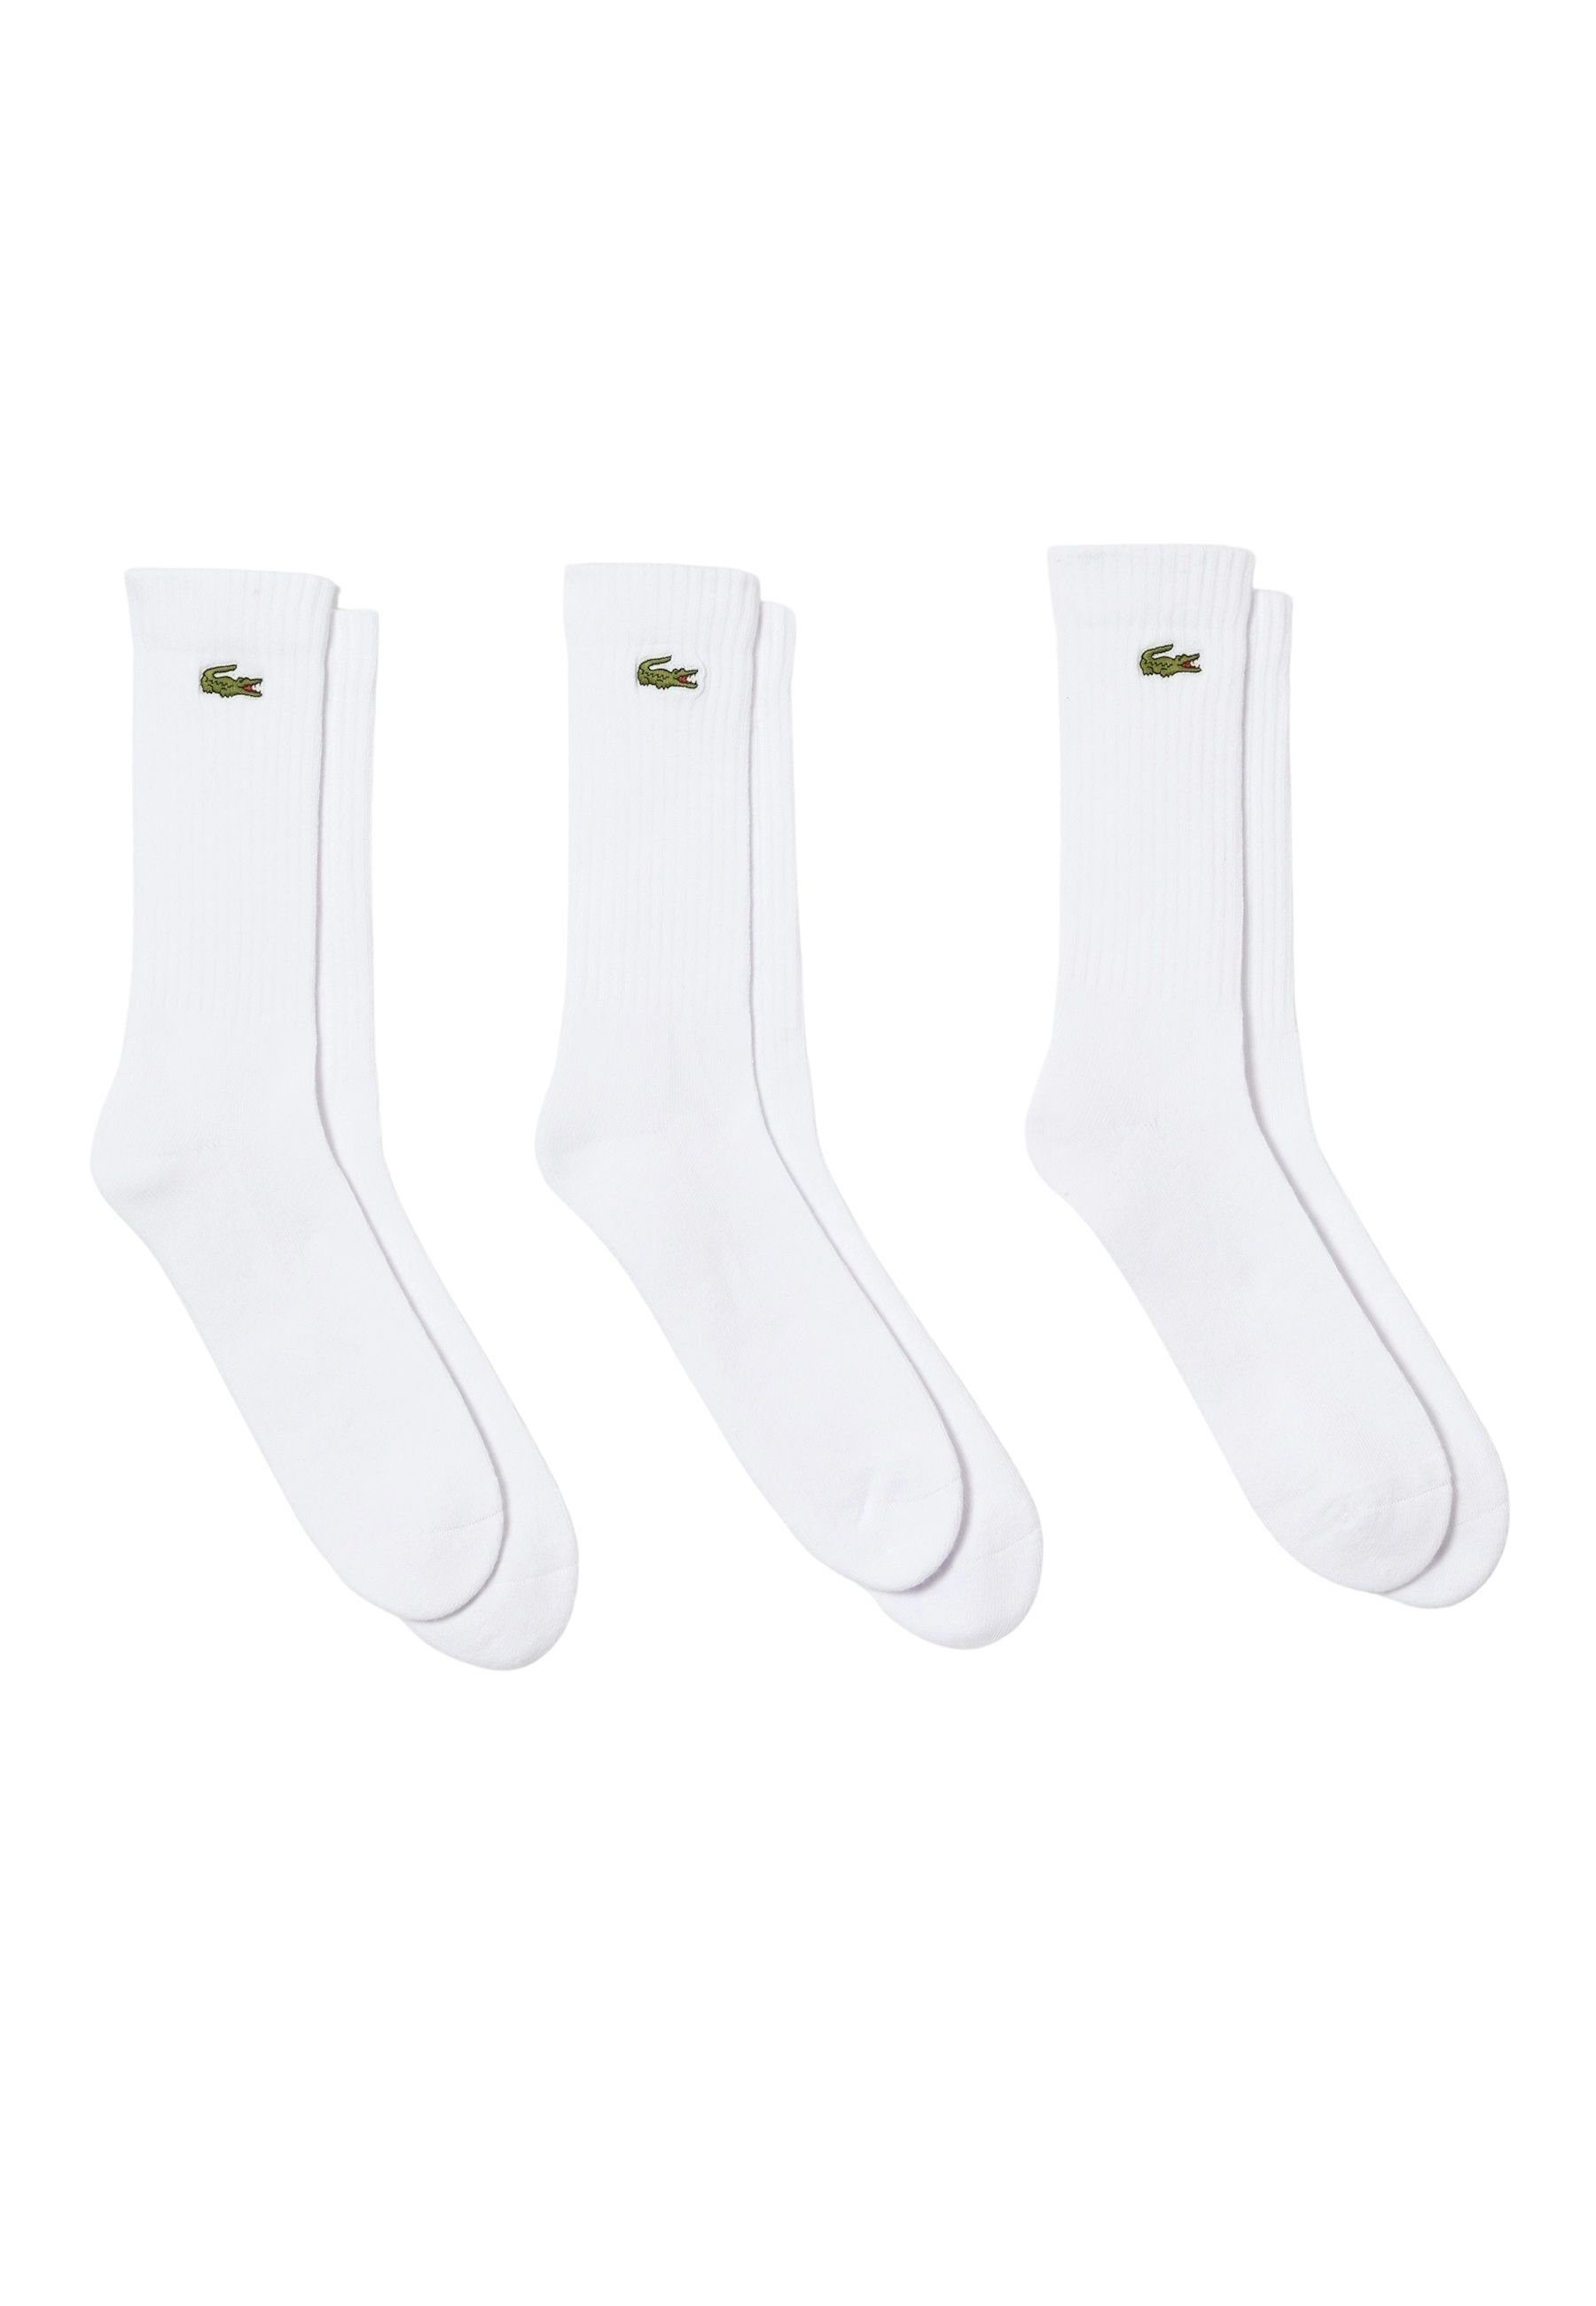 Lacoste Socken Socken Permanent weiß Dreierpack Offer Socken hohe (3-Paar)